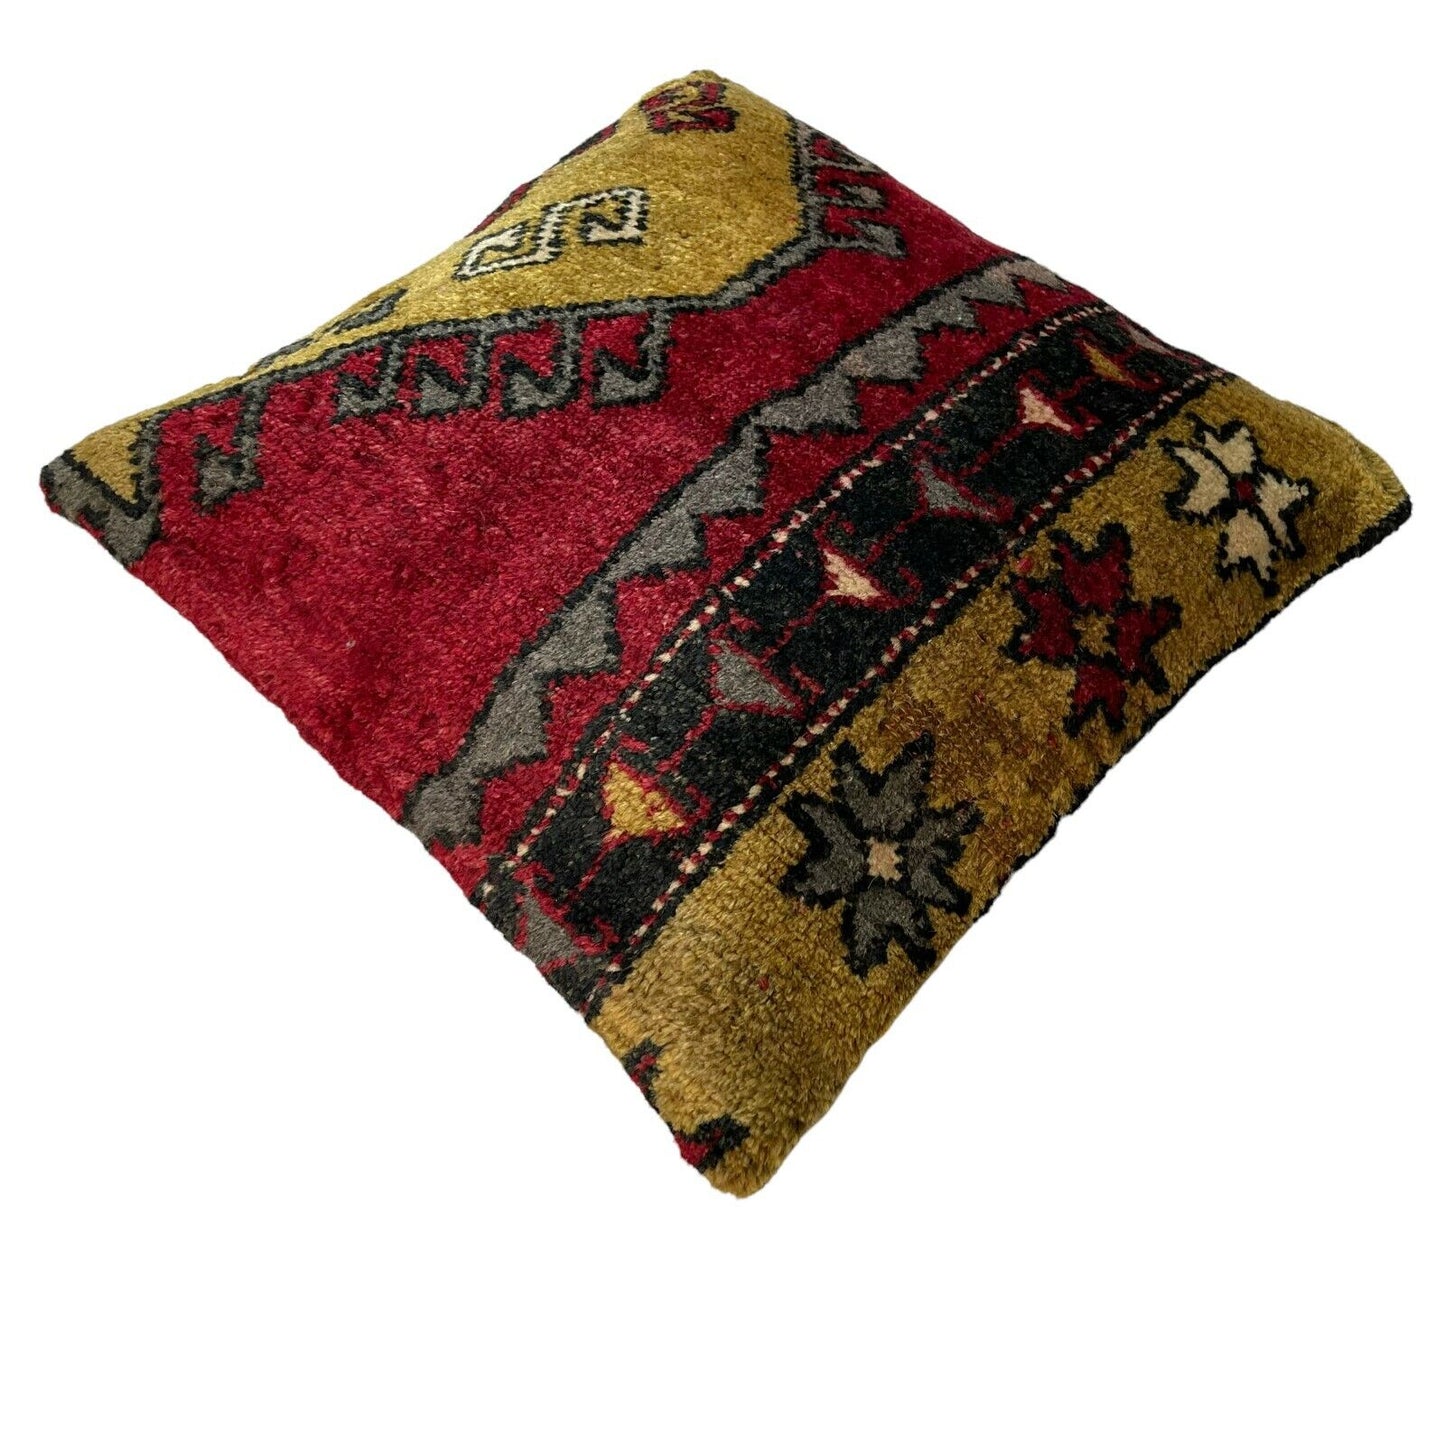 45x45 cm  , Vintage Türkisch  Kissenbezug , Vintage  Cushion Cover